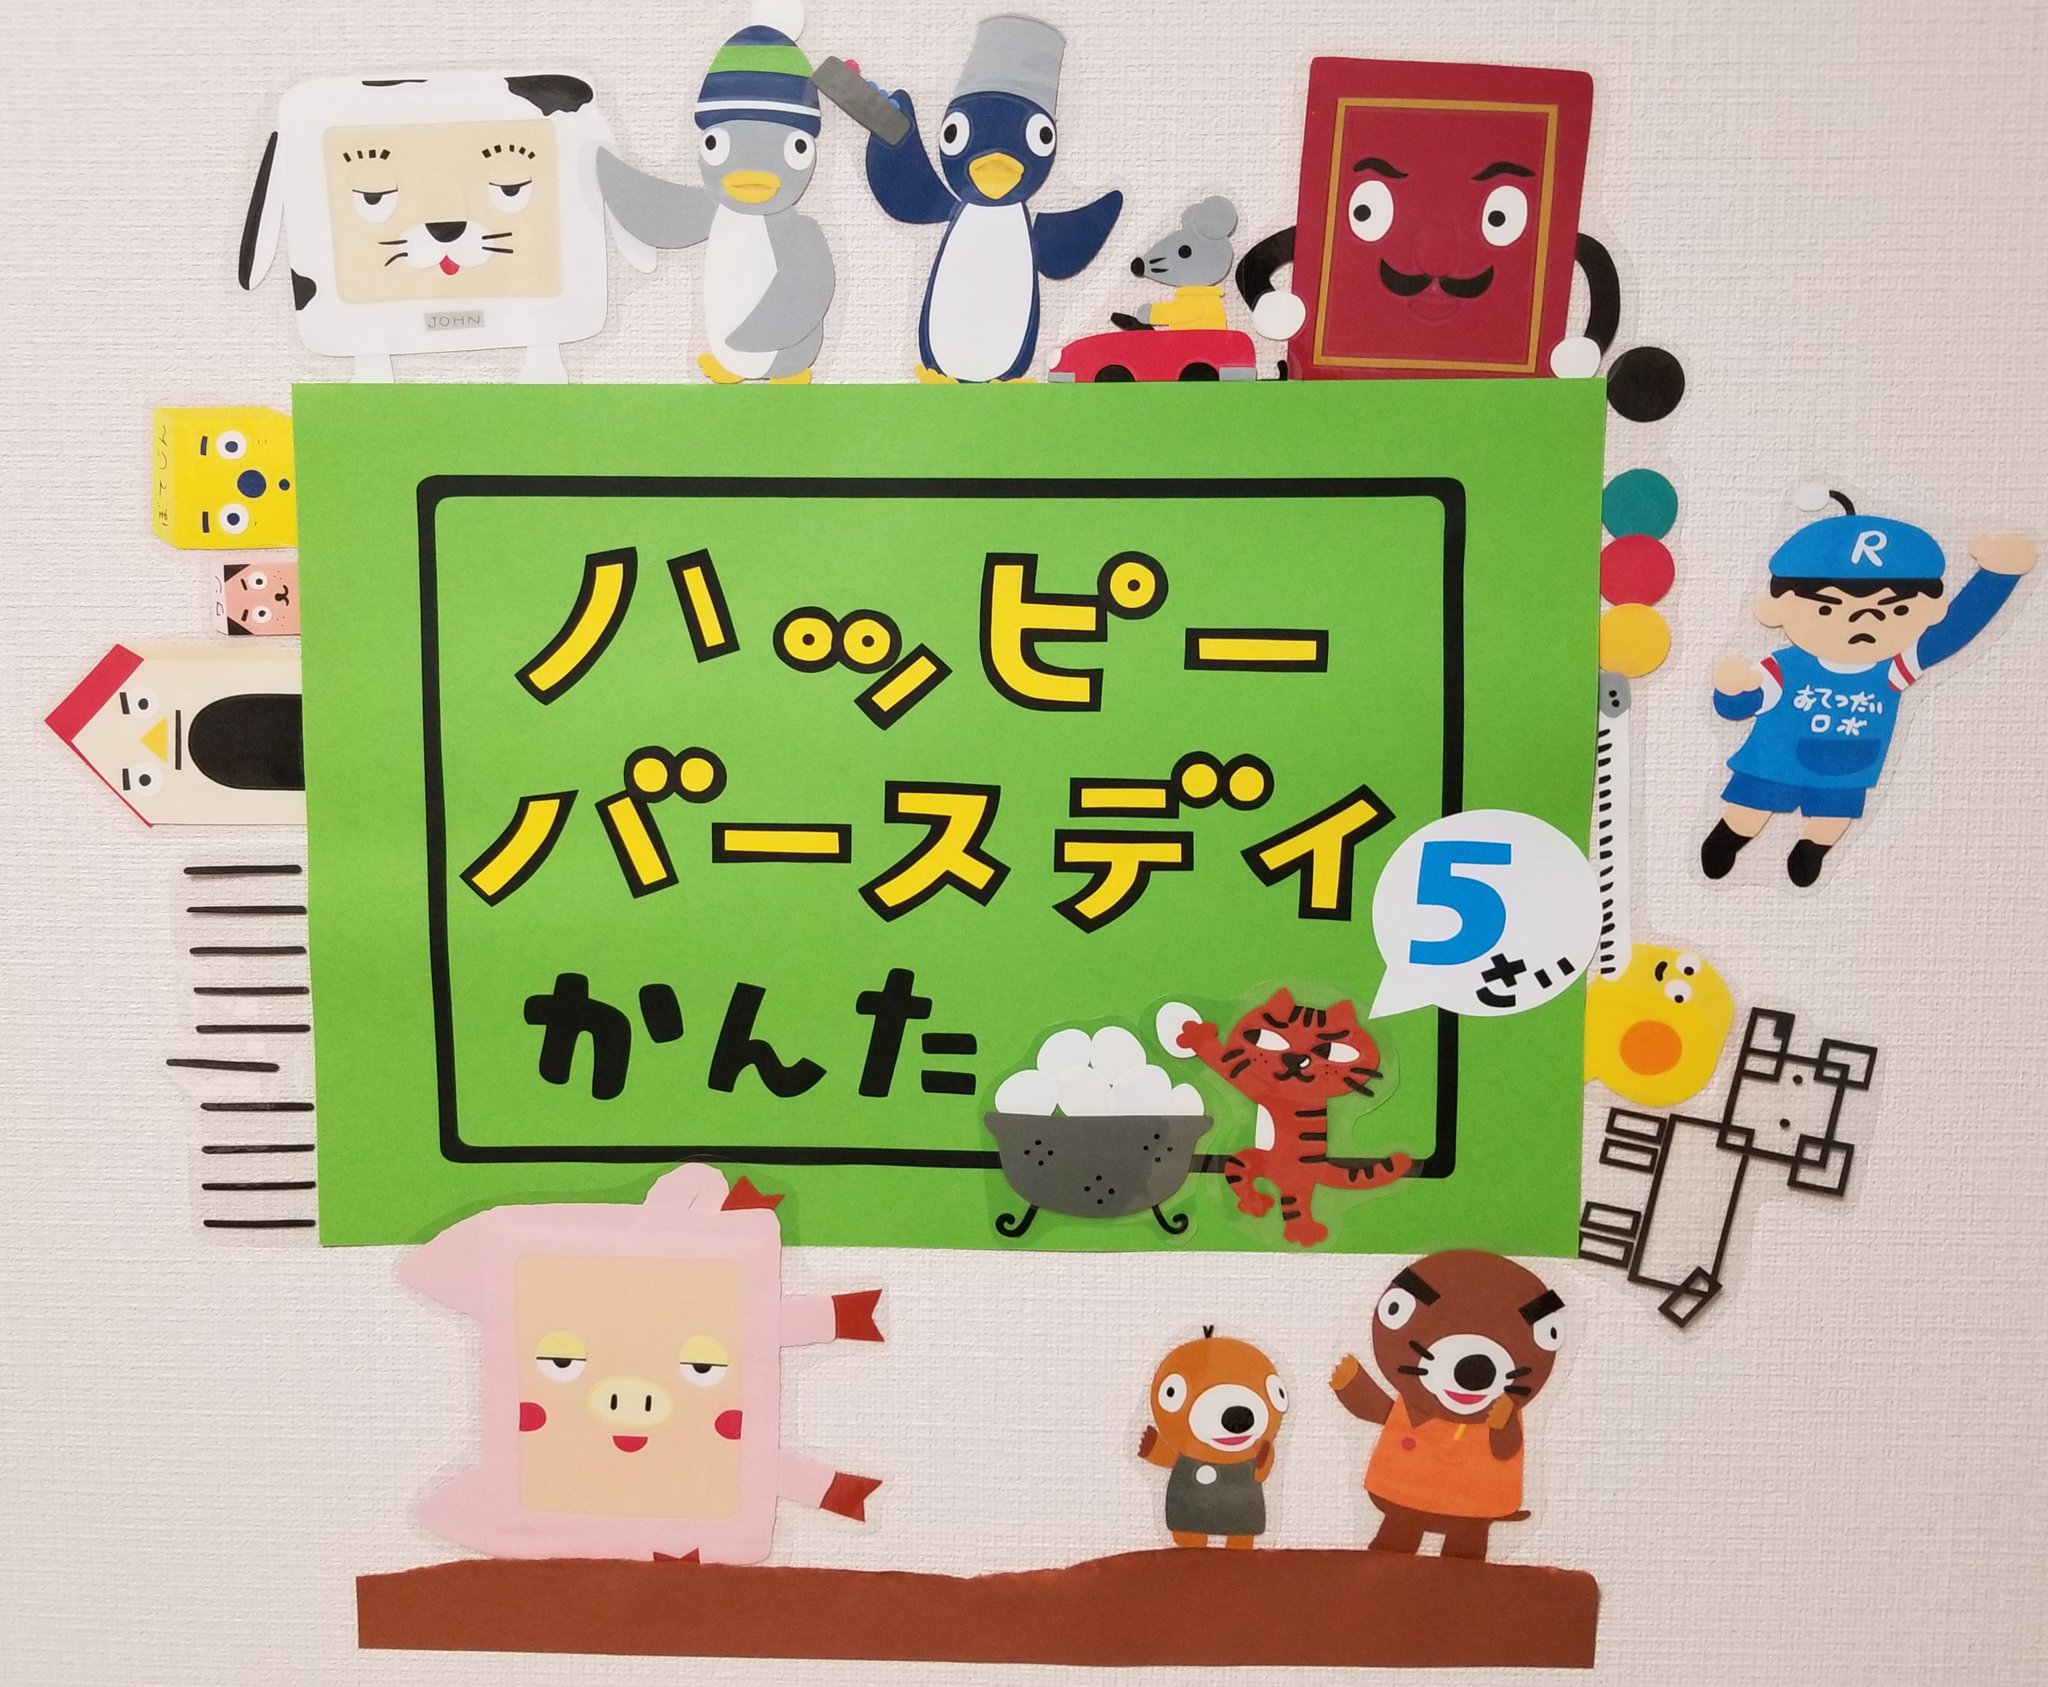 Tekkanamaki בטוויטר たまごーとる たま 10ぽんアニメも 表すのは同じすうじ ピタゴラスイッチ 壁紙 画用紙